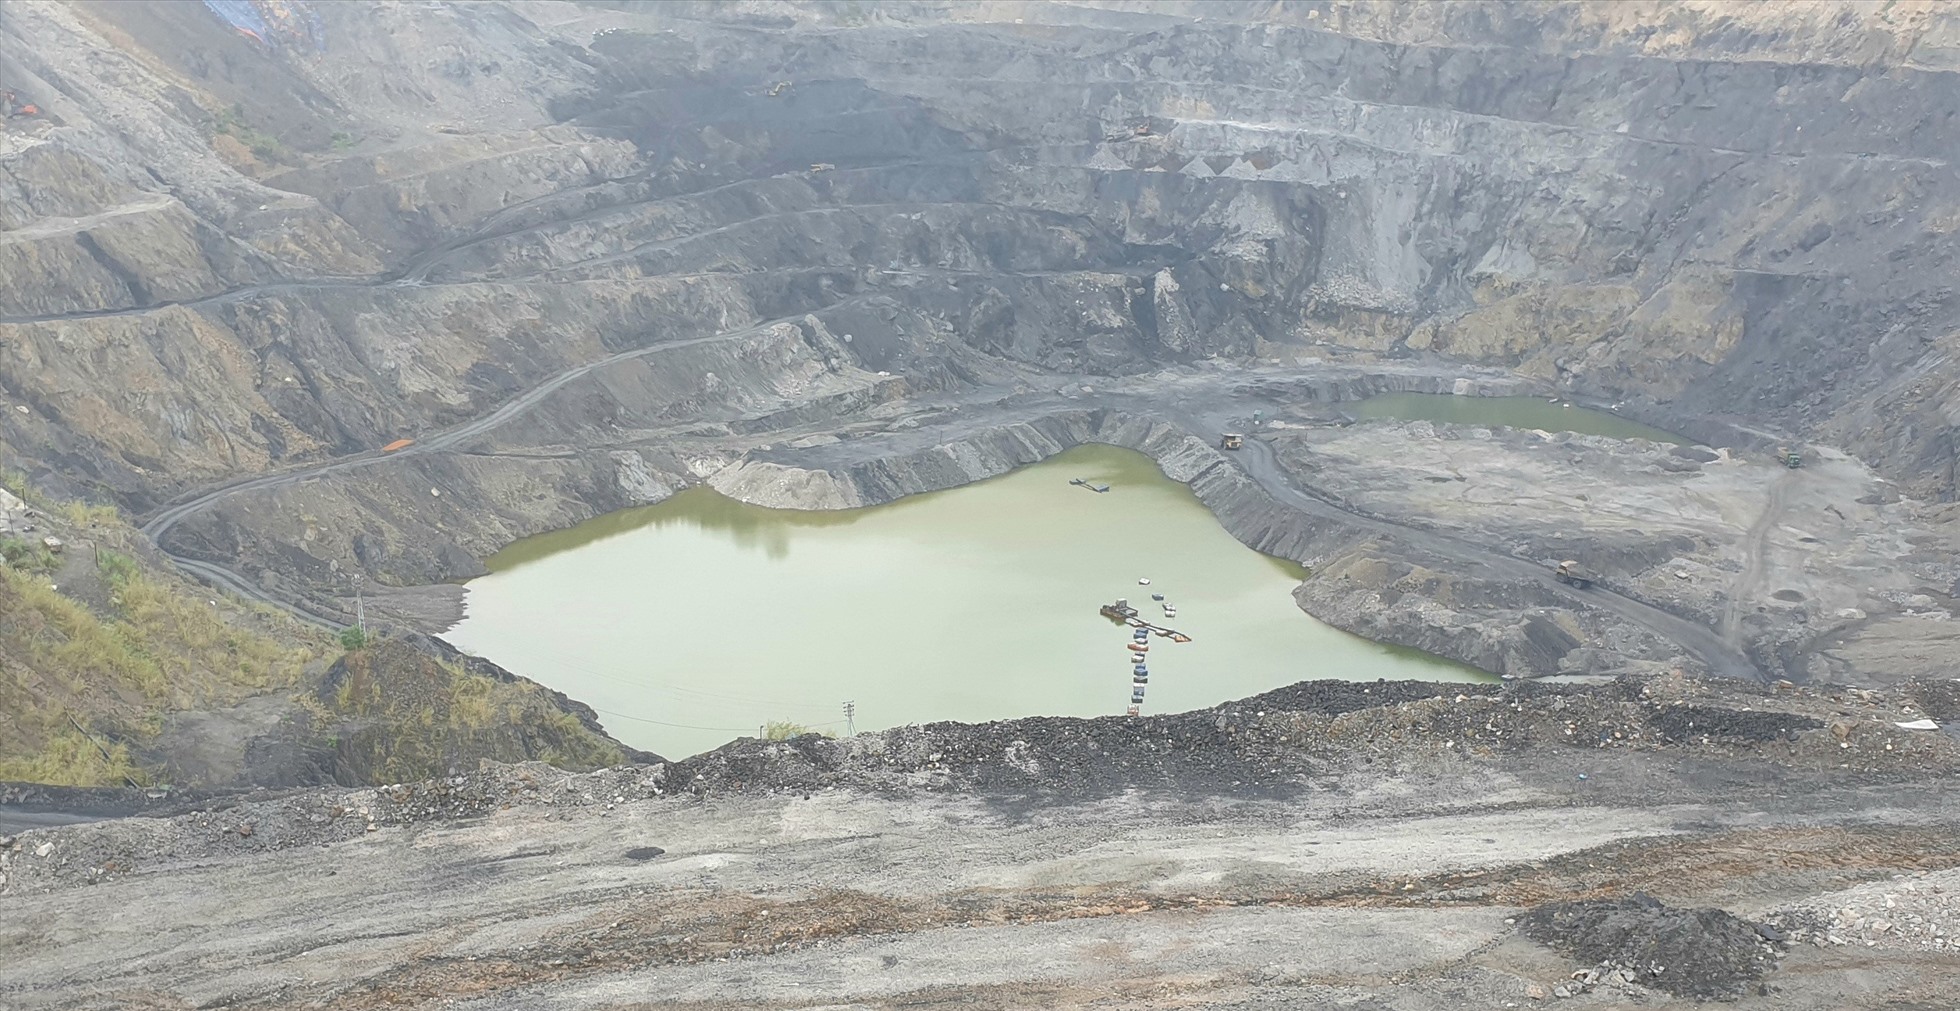 Moong than này sâu khoảng 160m. Moong than lộ thiên sâu nhất ở Quảng Ninh thuộc về moong than của Công ty Cp than Cọc 6 tại TP.Cẩm Phả (sâu hơn 300m). Ảnh: Nguyễn Hùng